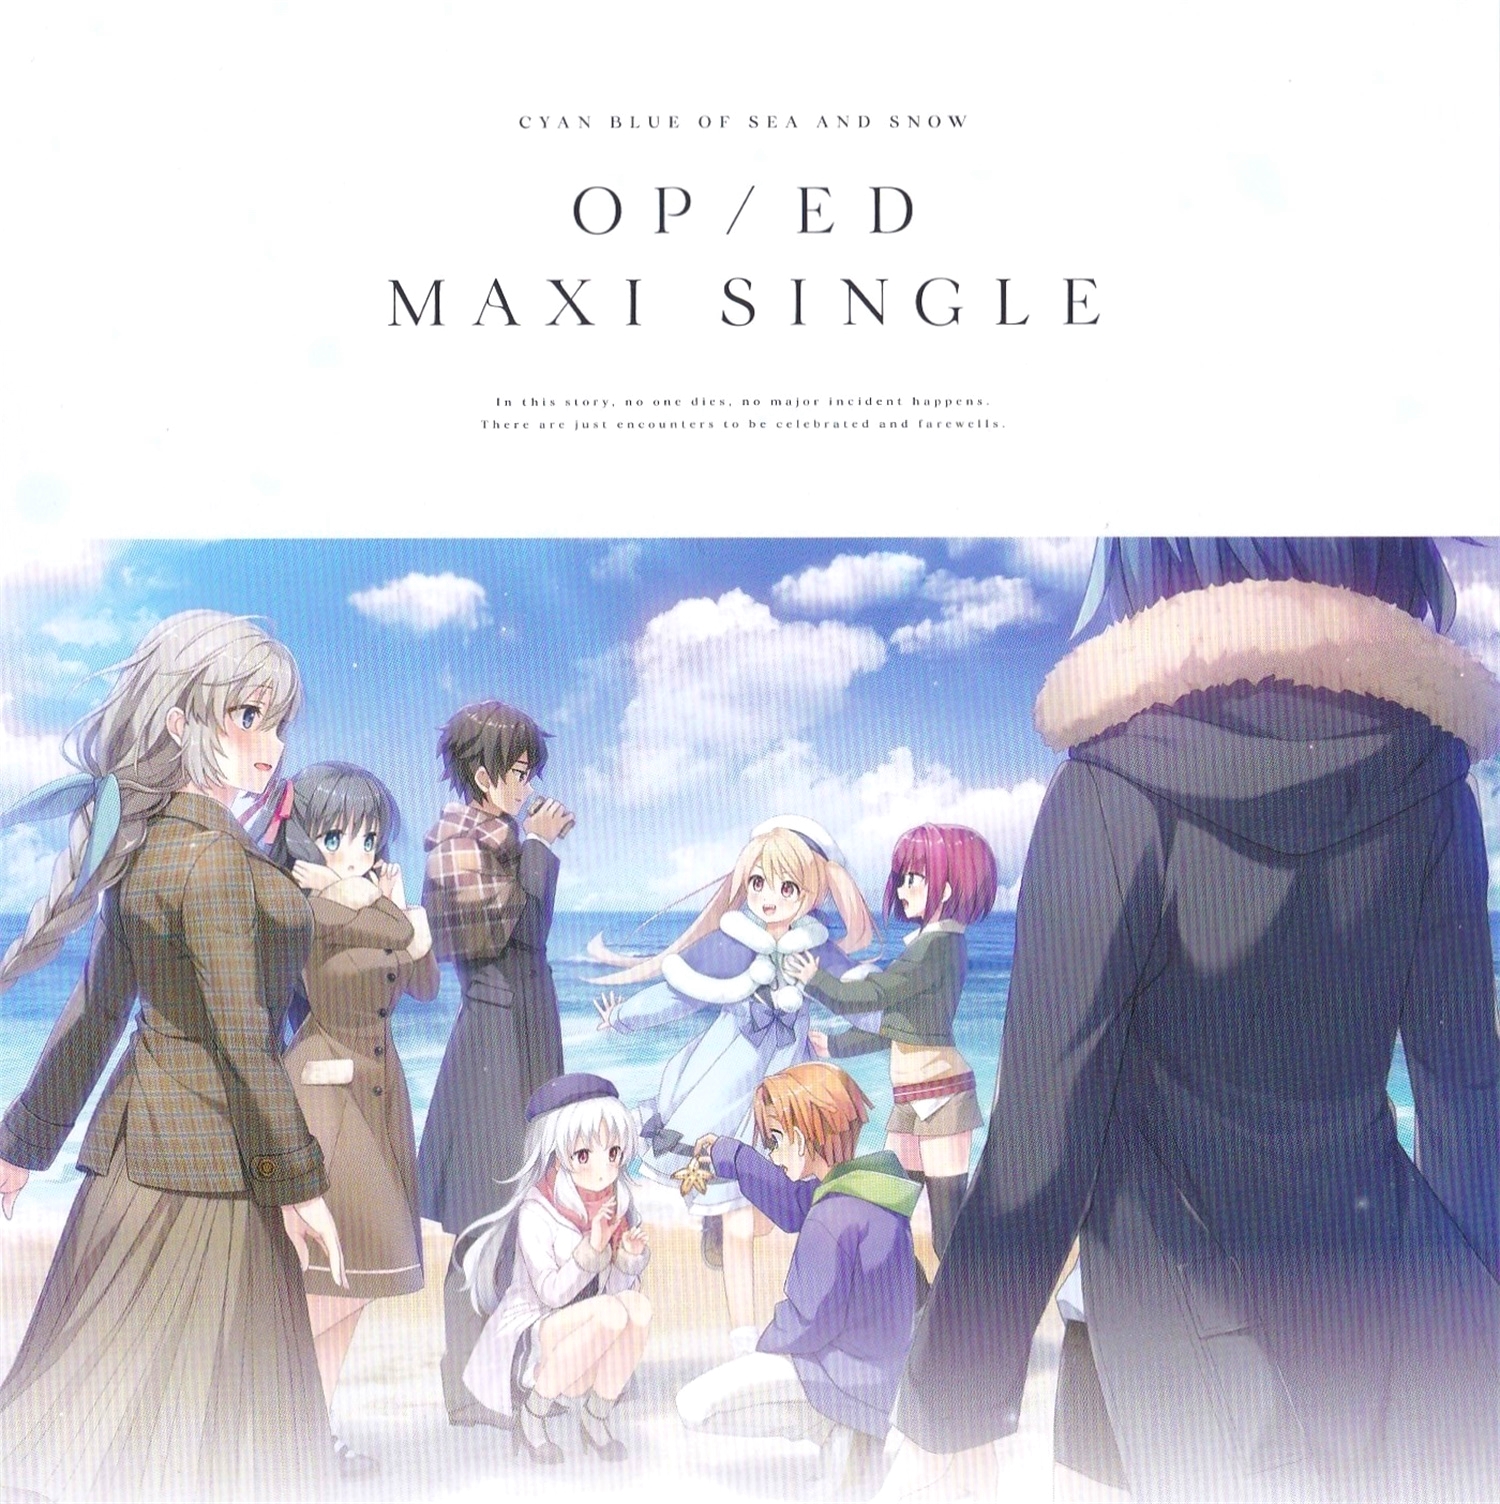 【WAV】ゲーム「海と雪のシアンブルー」Opening & Ending Maxi Single／CUBE